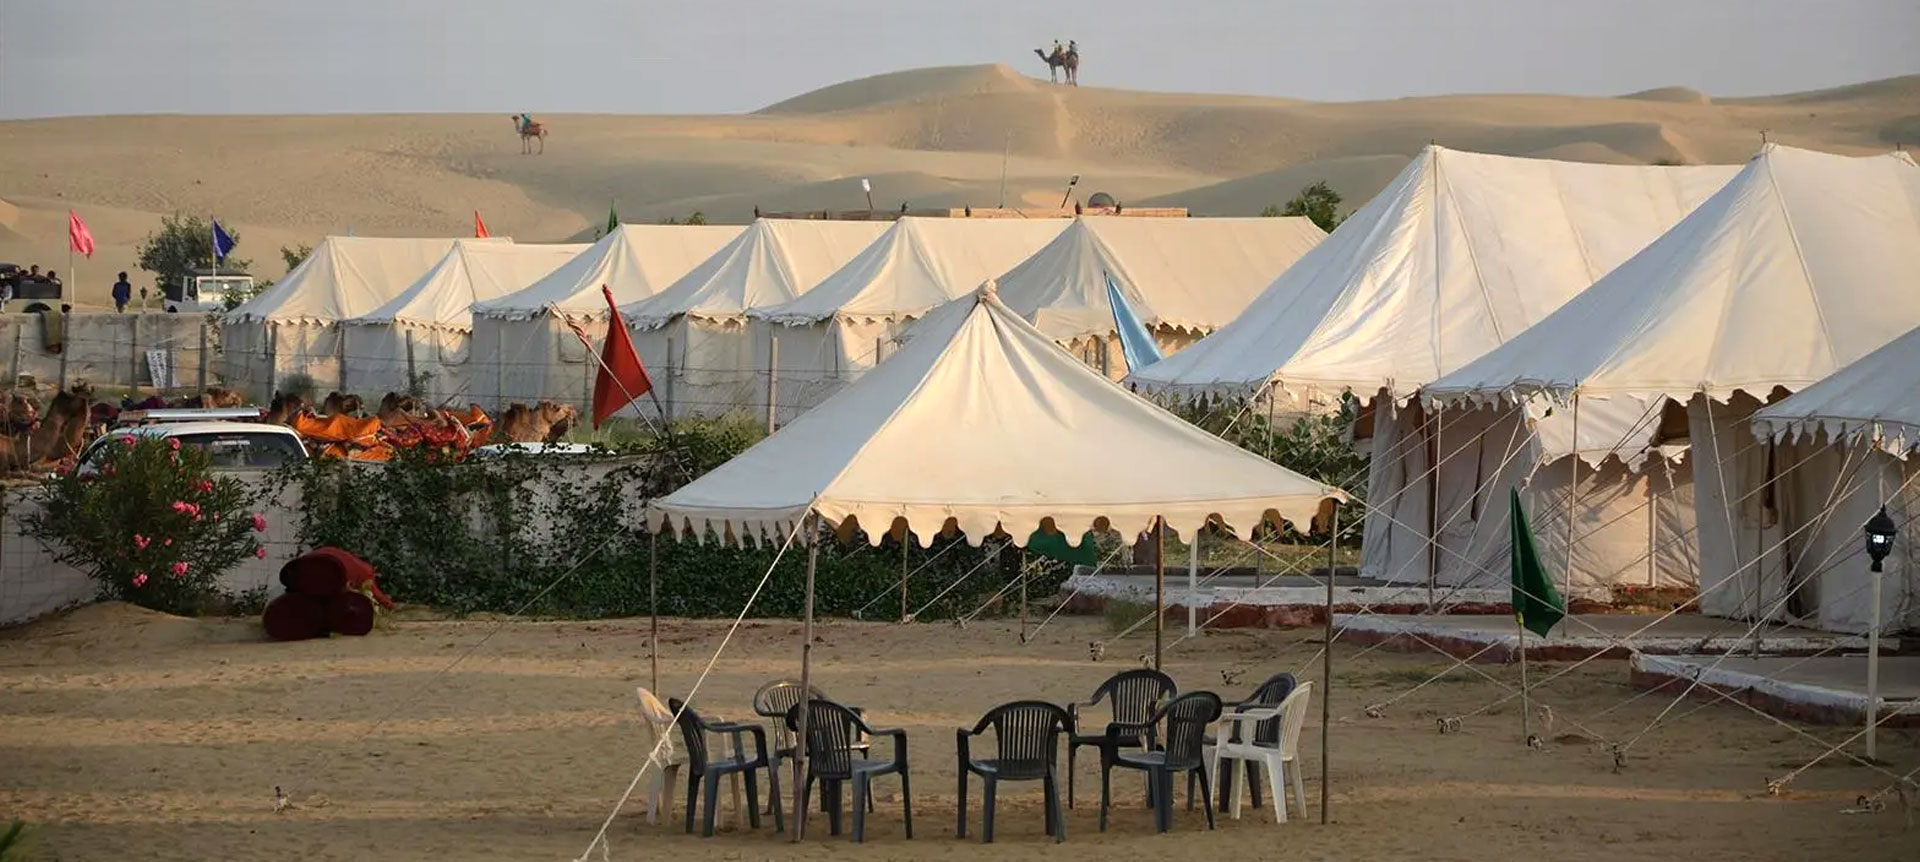 kk bhargav desert safari & camp